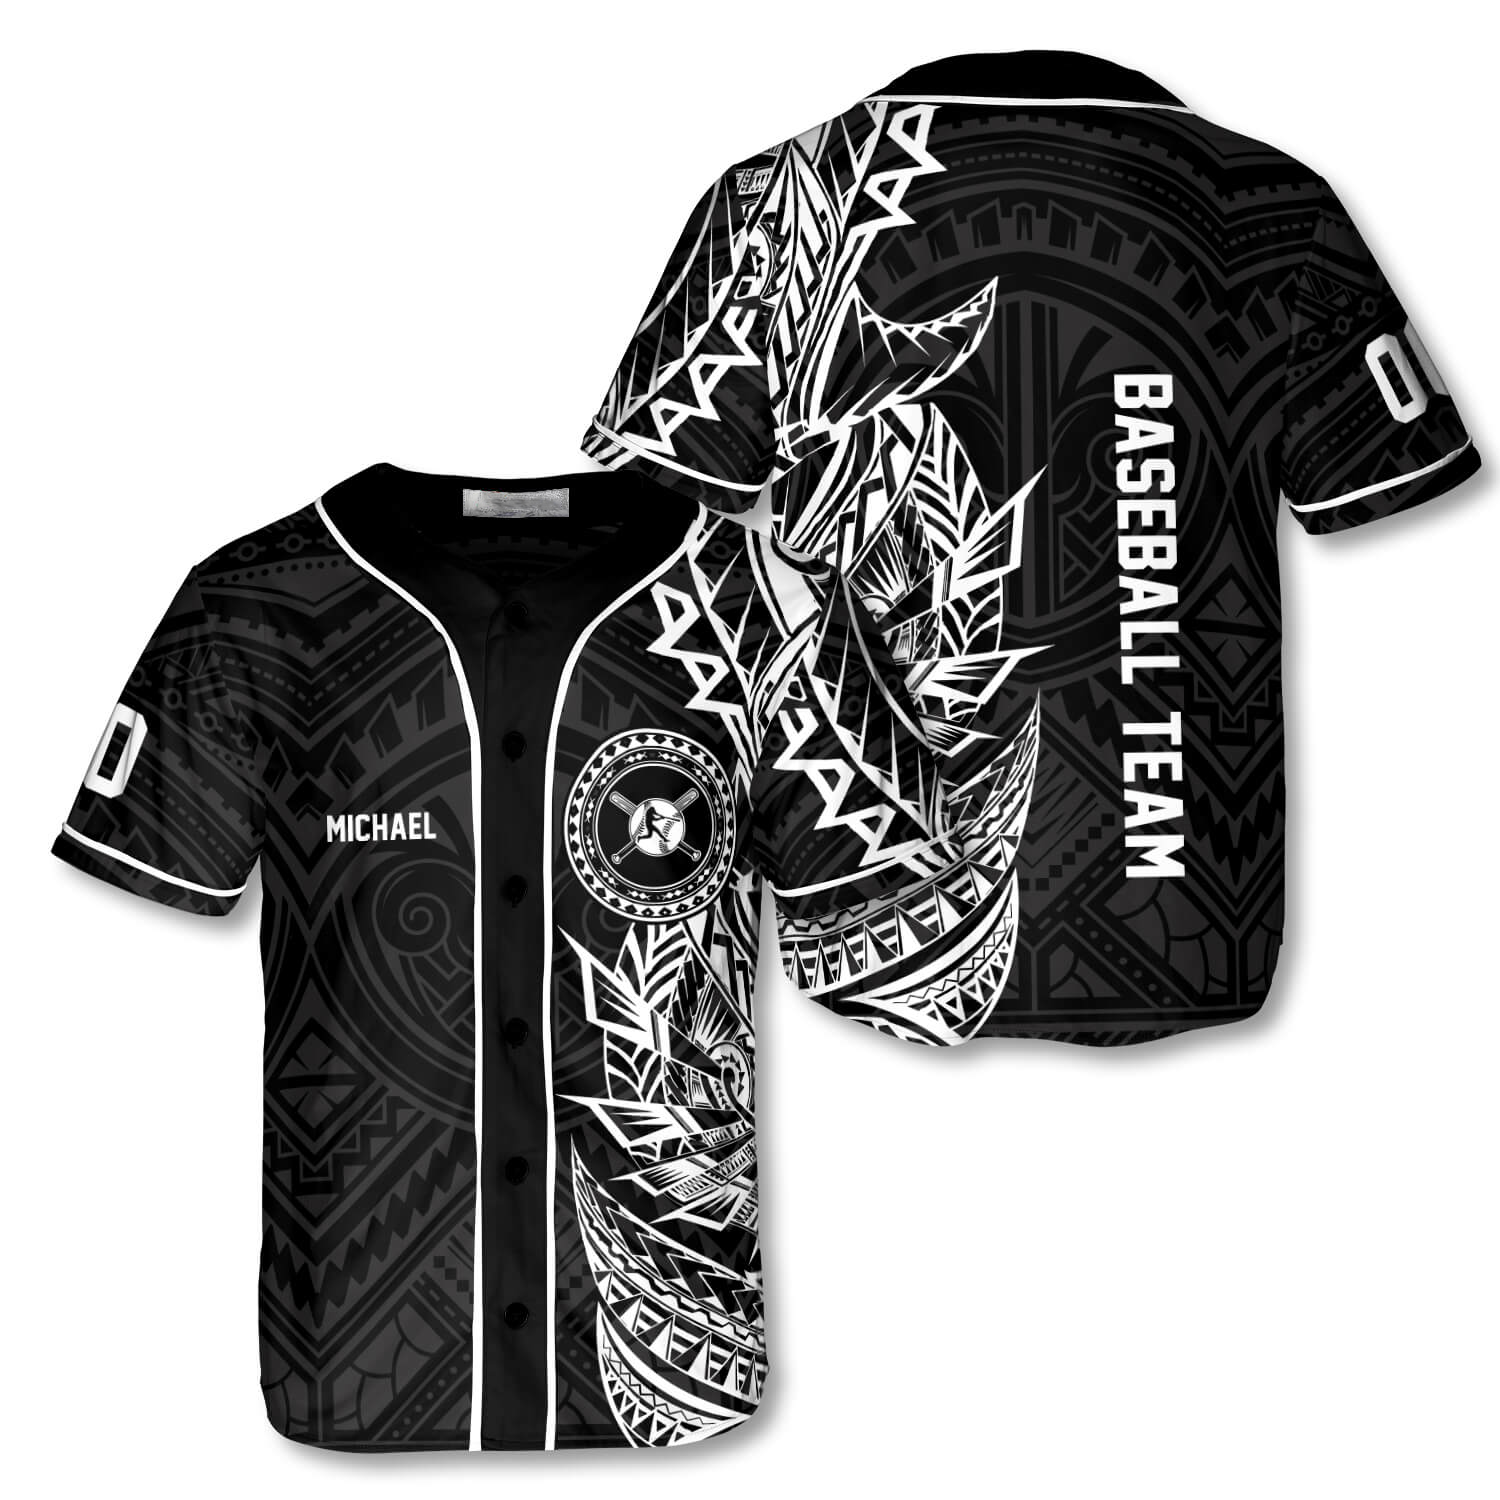 Athlete BW Tribal Custom Baseball Jersey/ Best Shirt for Baseball Lover/ Gift for Men